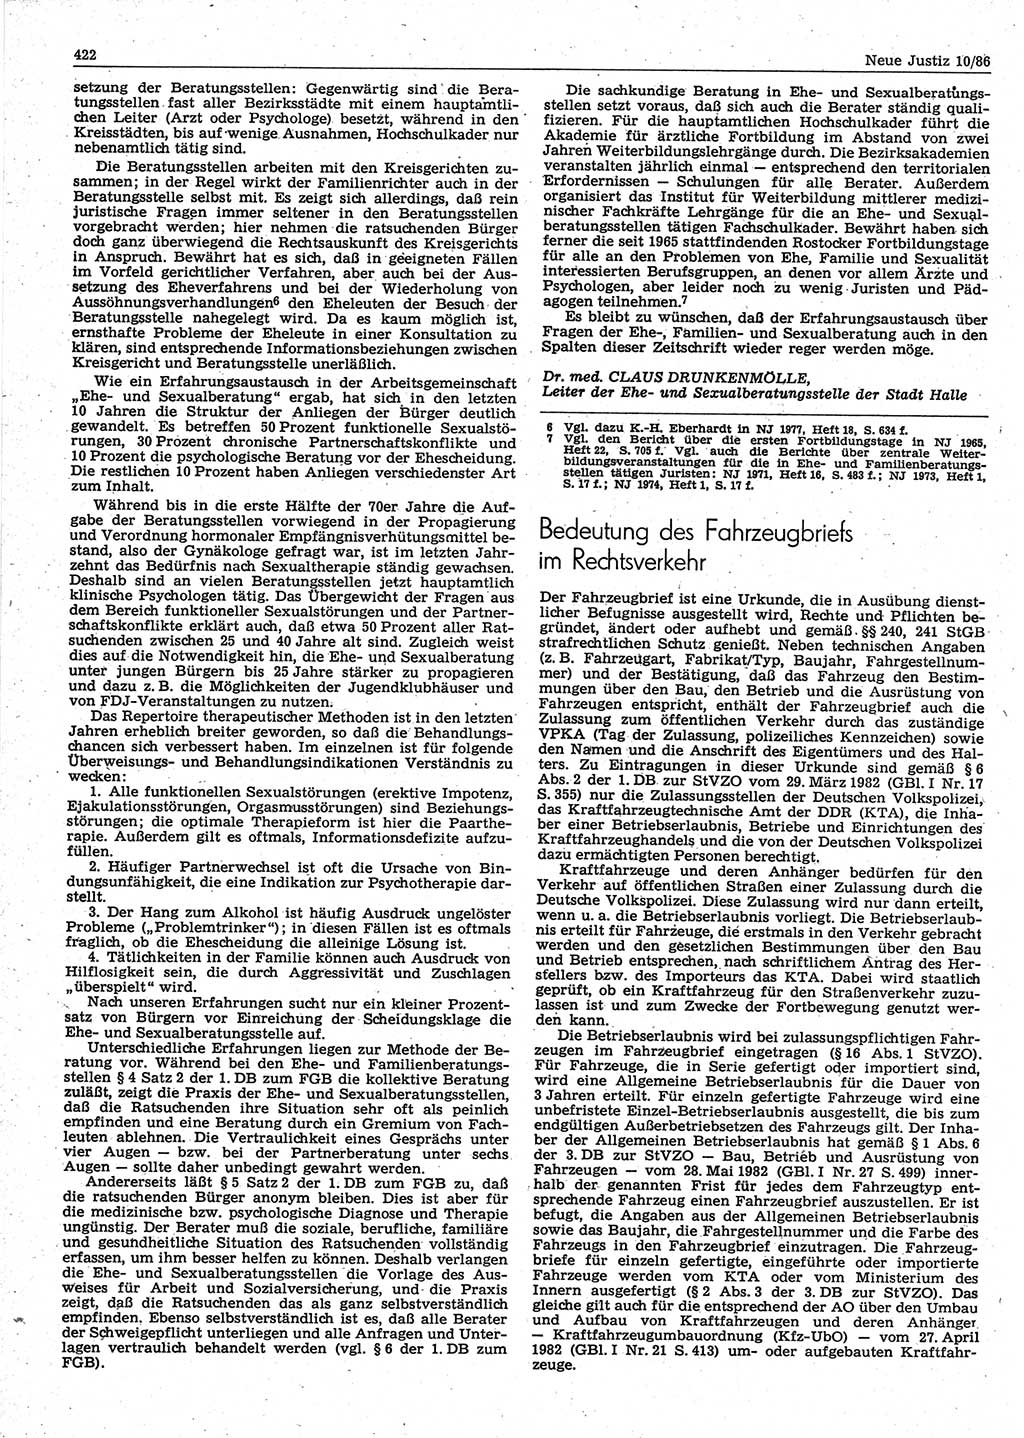 Neue Justiz (NJ), Zeitschrift für sozialistisches Recht und Gesetzlichkeit [Deutsche Demokratische Republik (DDR)], 40. Jahrgang 1986, Seite 422 (NJ DDR 1986, S. 422)